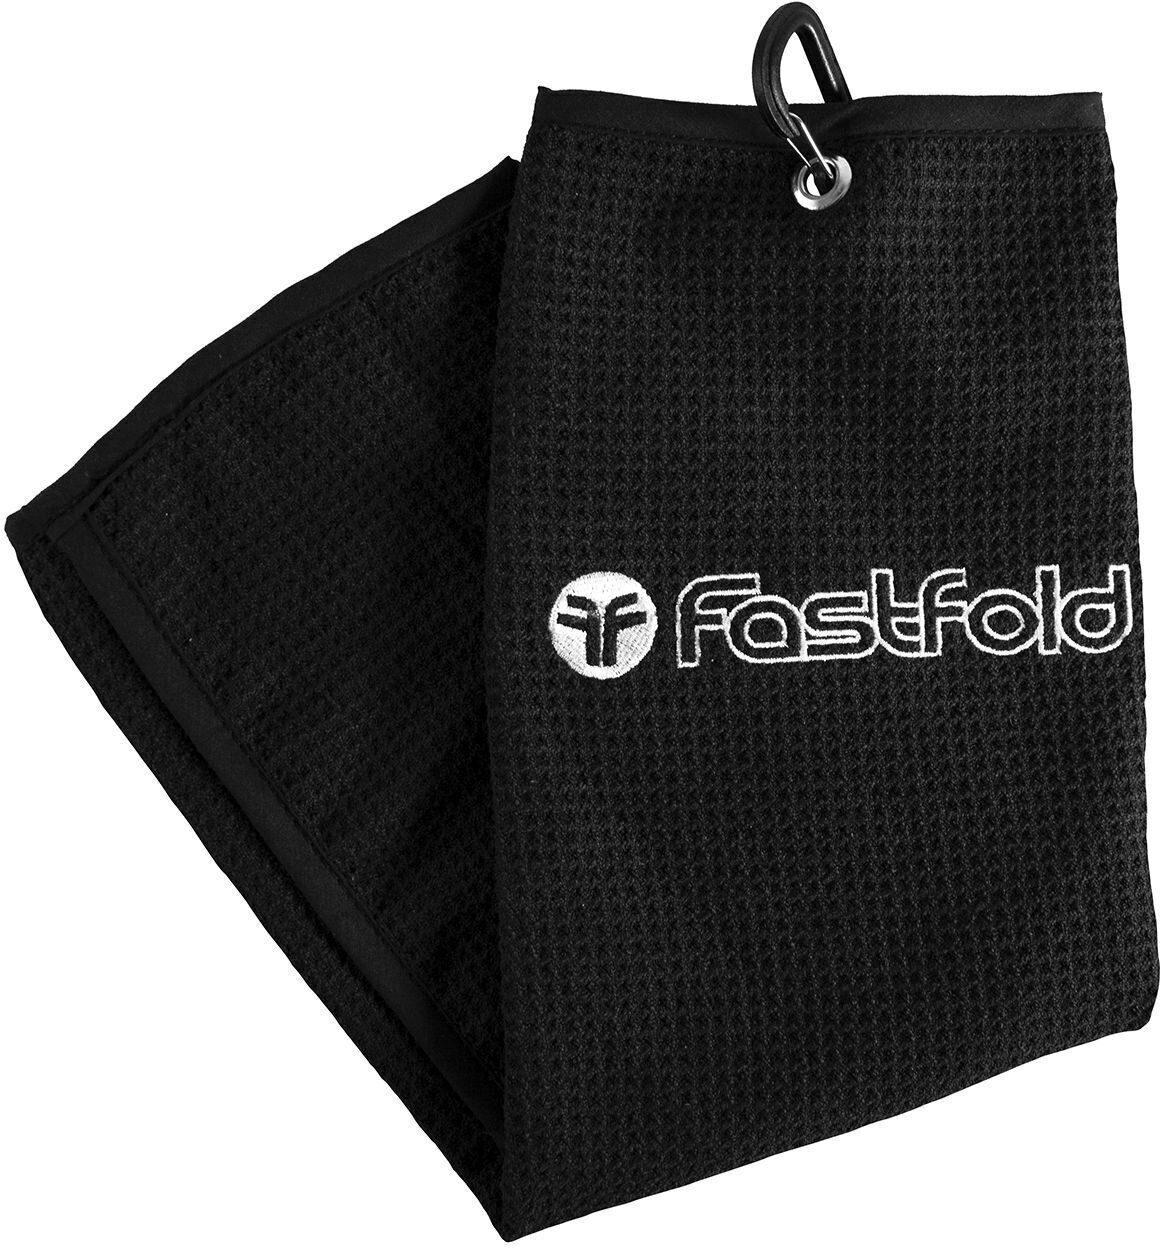 Prosop Fastfold Towel Prosop